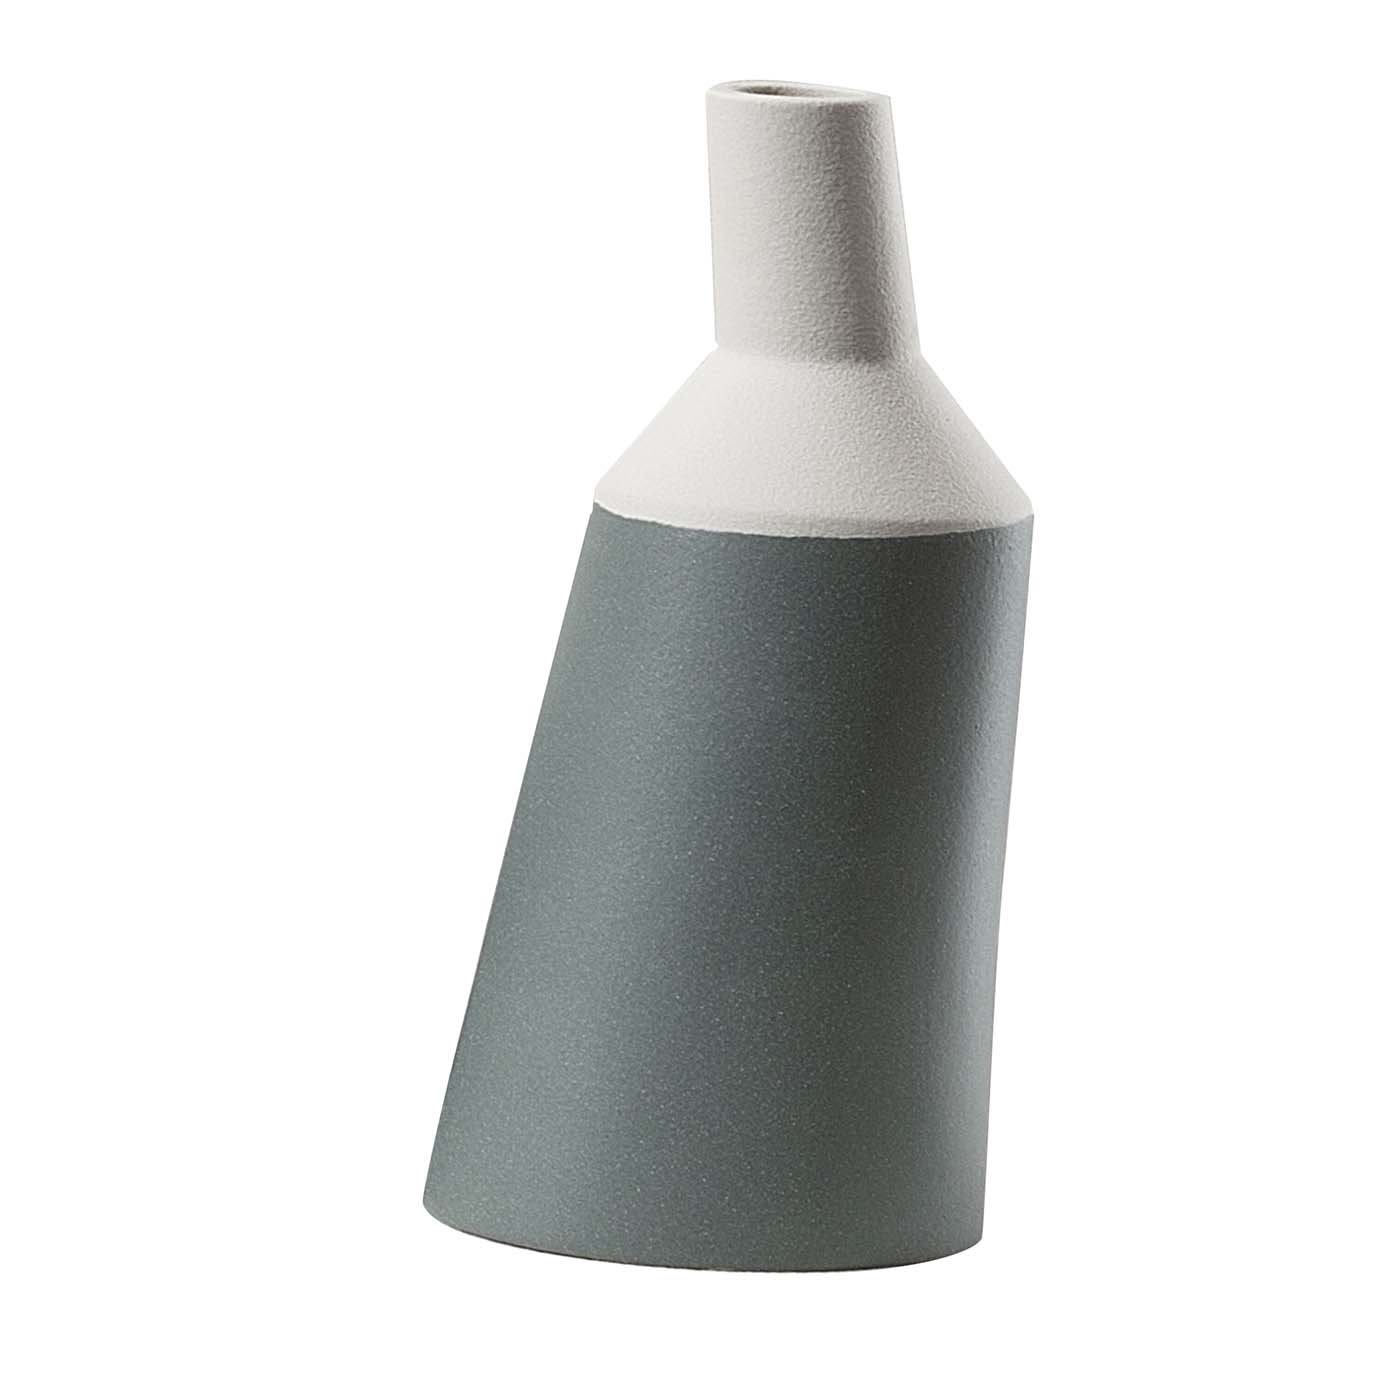 Large Teal Bottle Vase - Lineasette